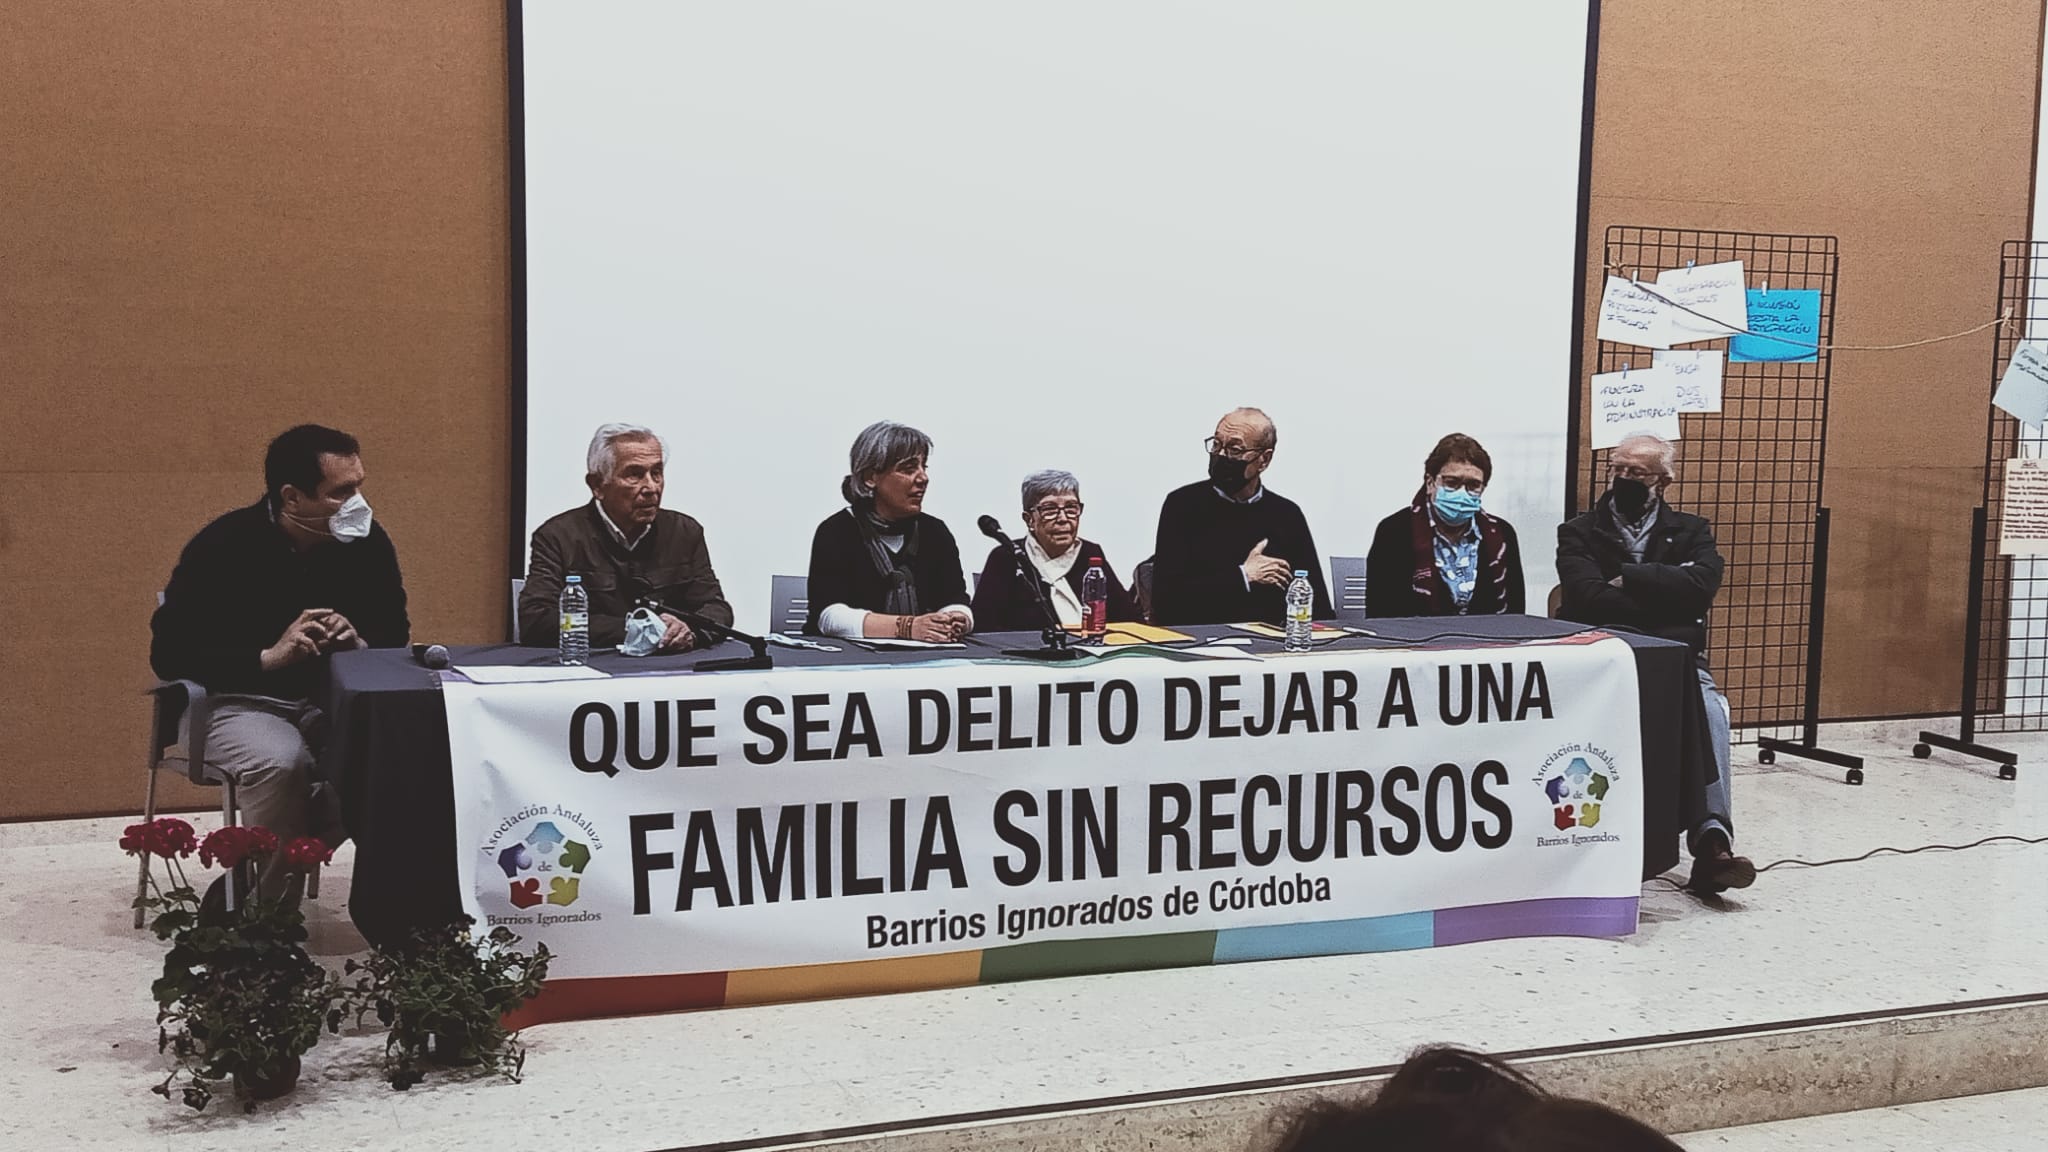 Presentación de la jornada de barrios ignorados celebrada el pasado fin de semana en Córdoba.